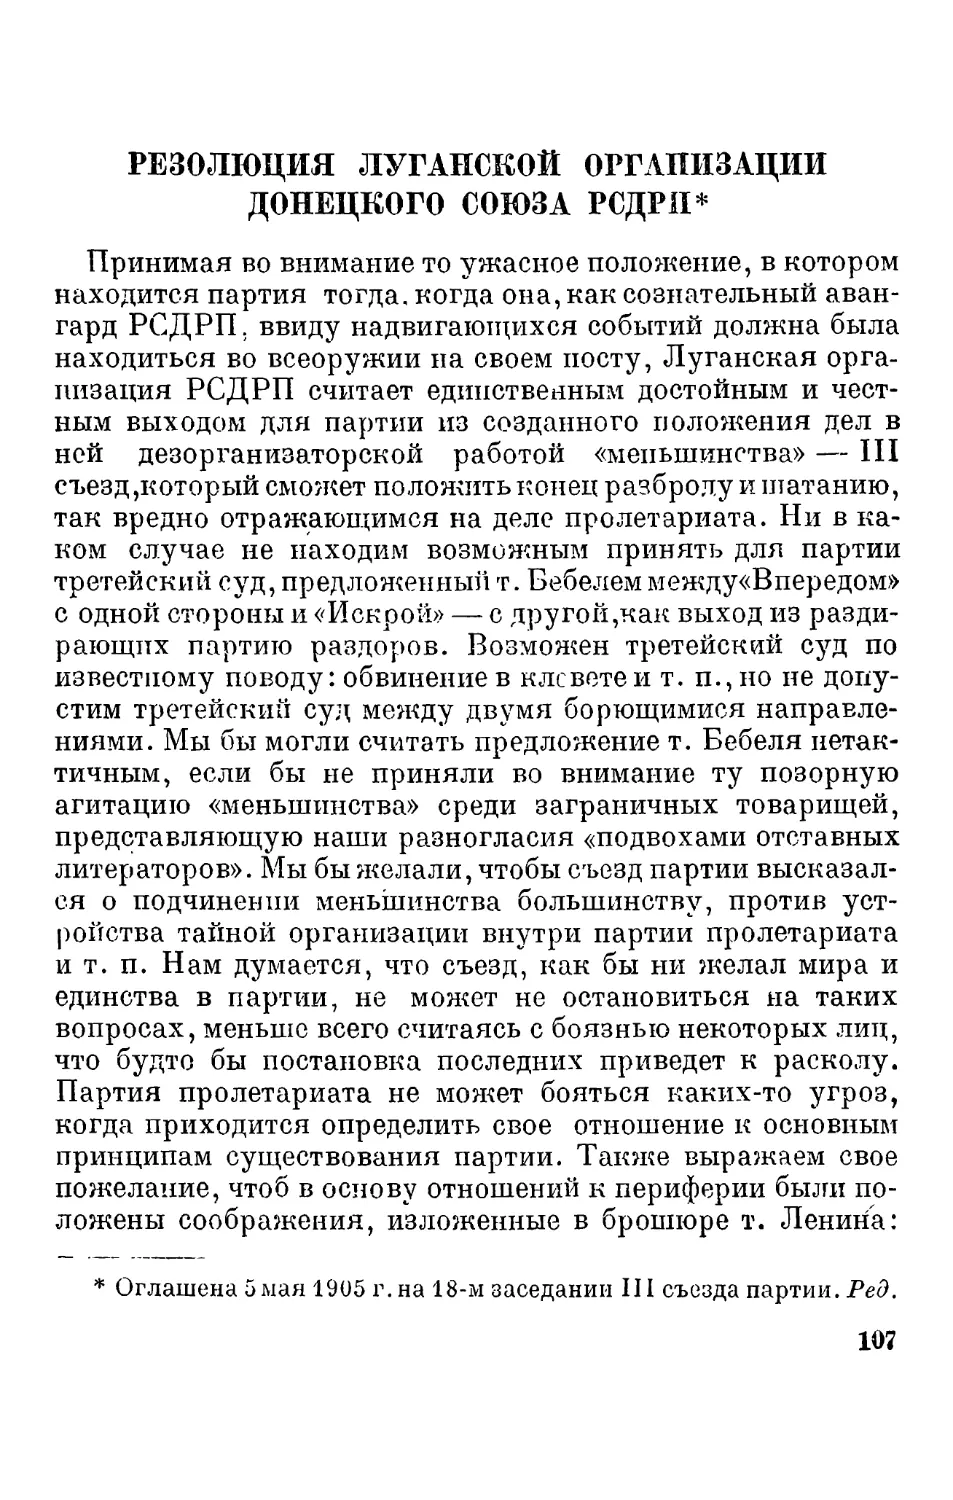 Резолюция Луганской организации Донецкого союза РСДРП 107 В. И. Ленин. Письмо Международному социалистическому бюро. 2 июня 1905 г.